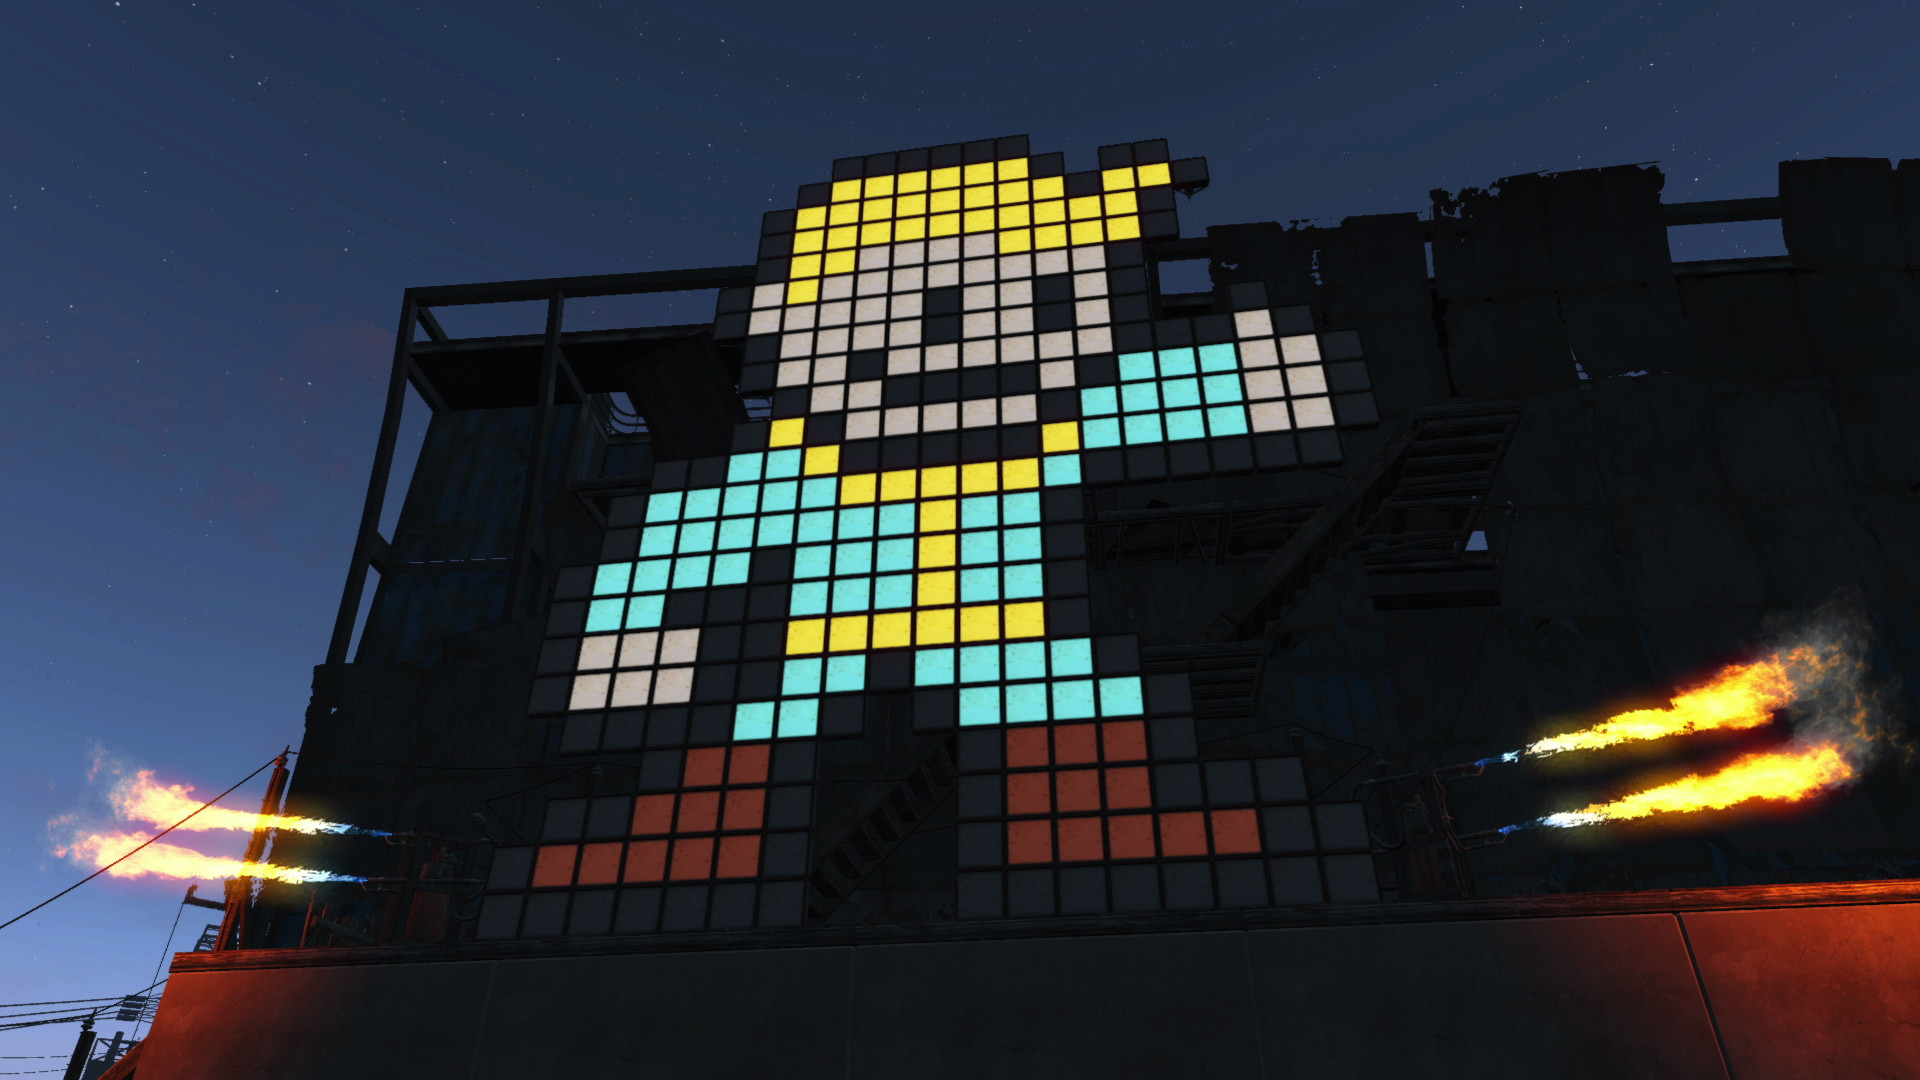 Одна новая функция ПК в обновлении Fallout 4 сама по себе отстойная, но вы можете это исправить — вот как